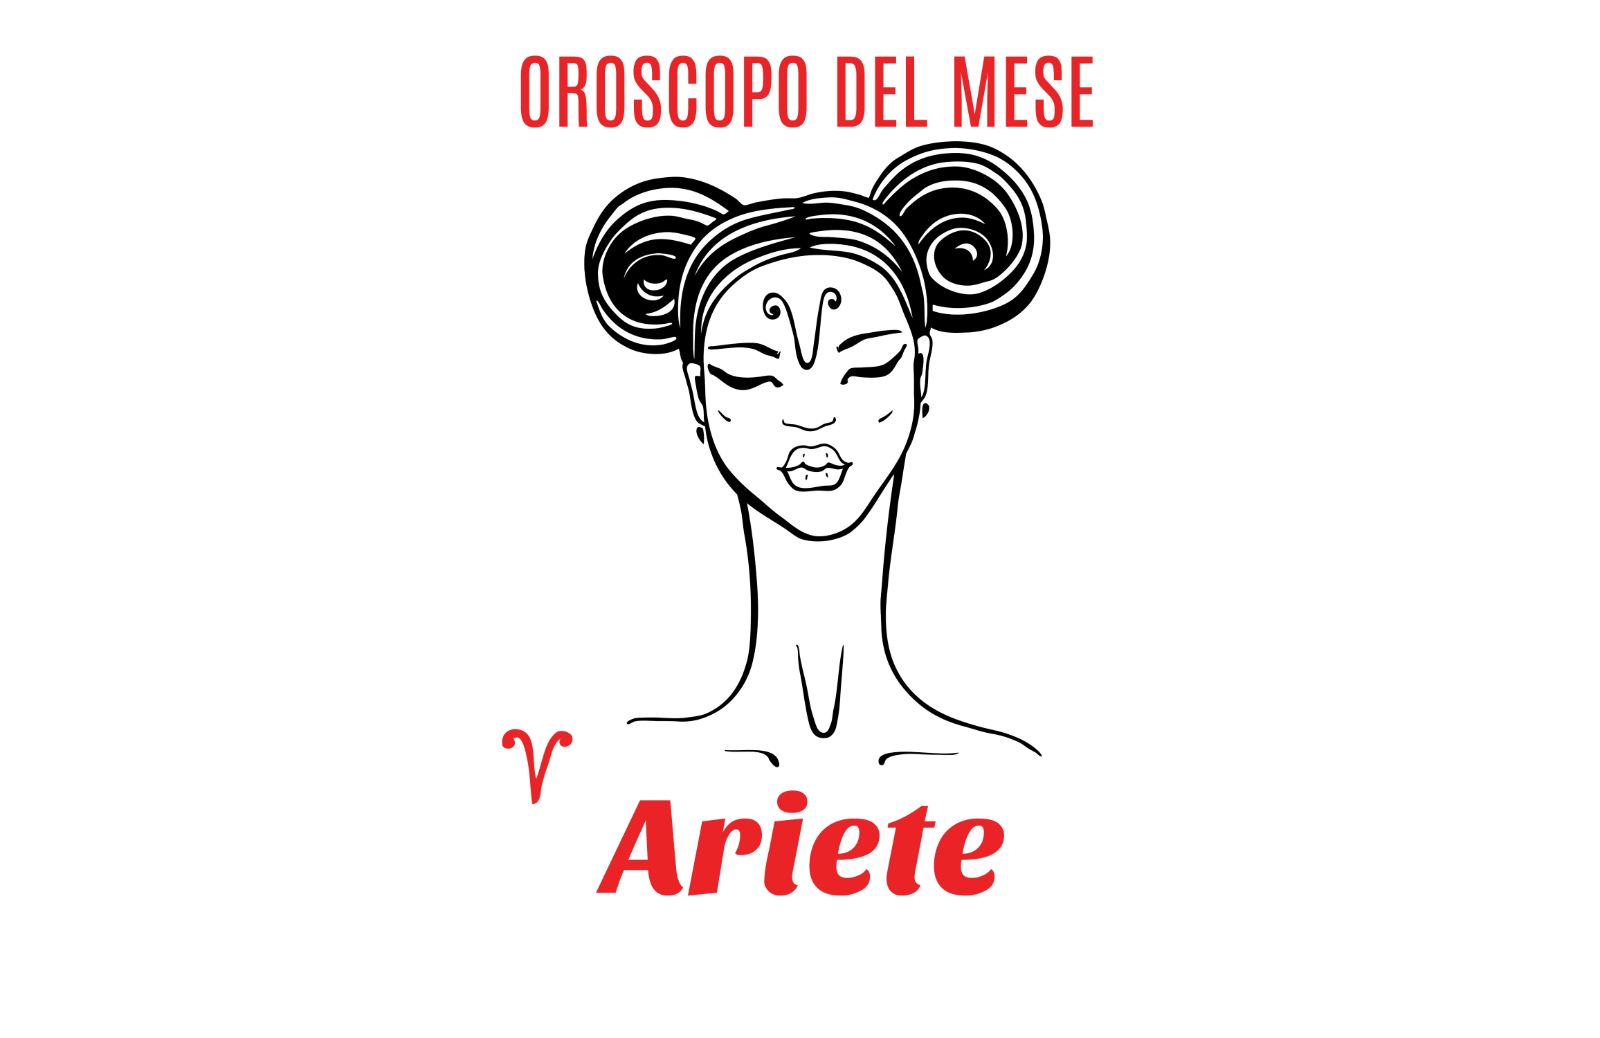 Oroscopo del mese: Ariete - aprile 2018